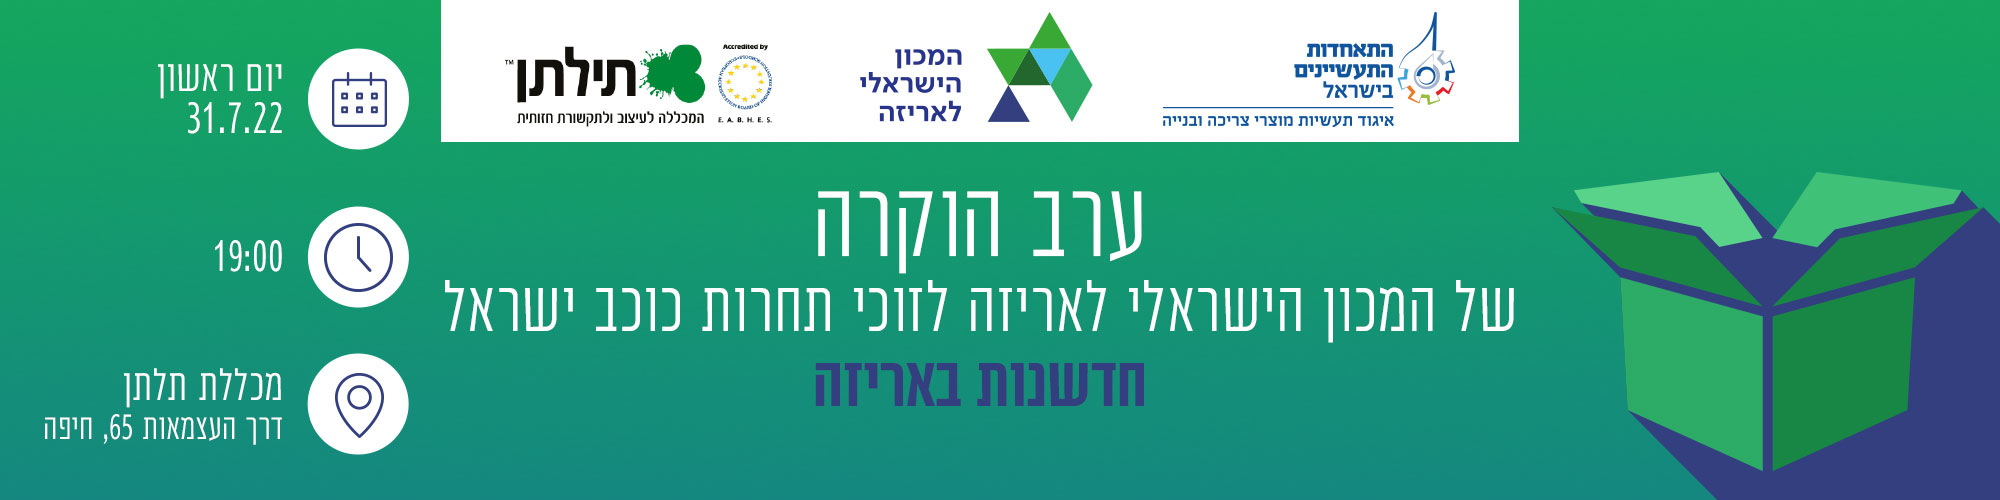 ערב הוקרה של המכון הישראלי לאריזה לזוכי תחרות כוכב ישראל חדשנות באריזה 31.7